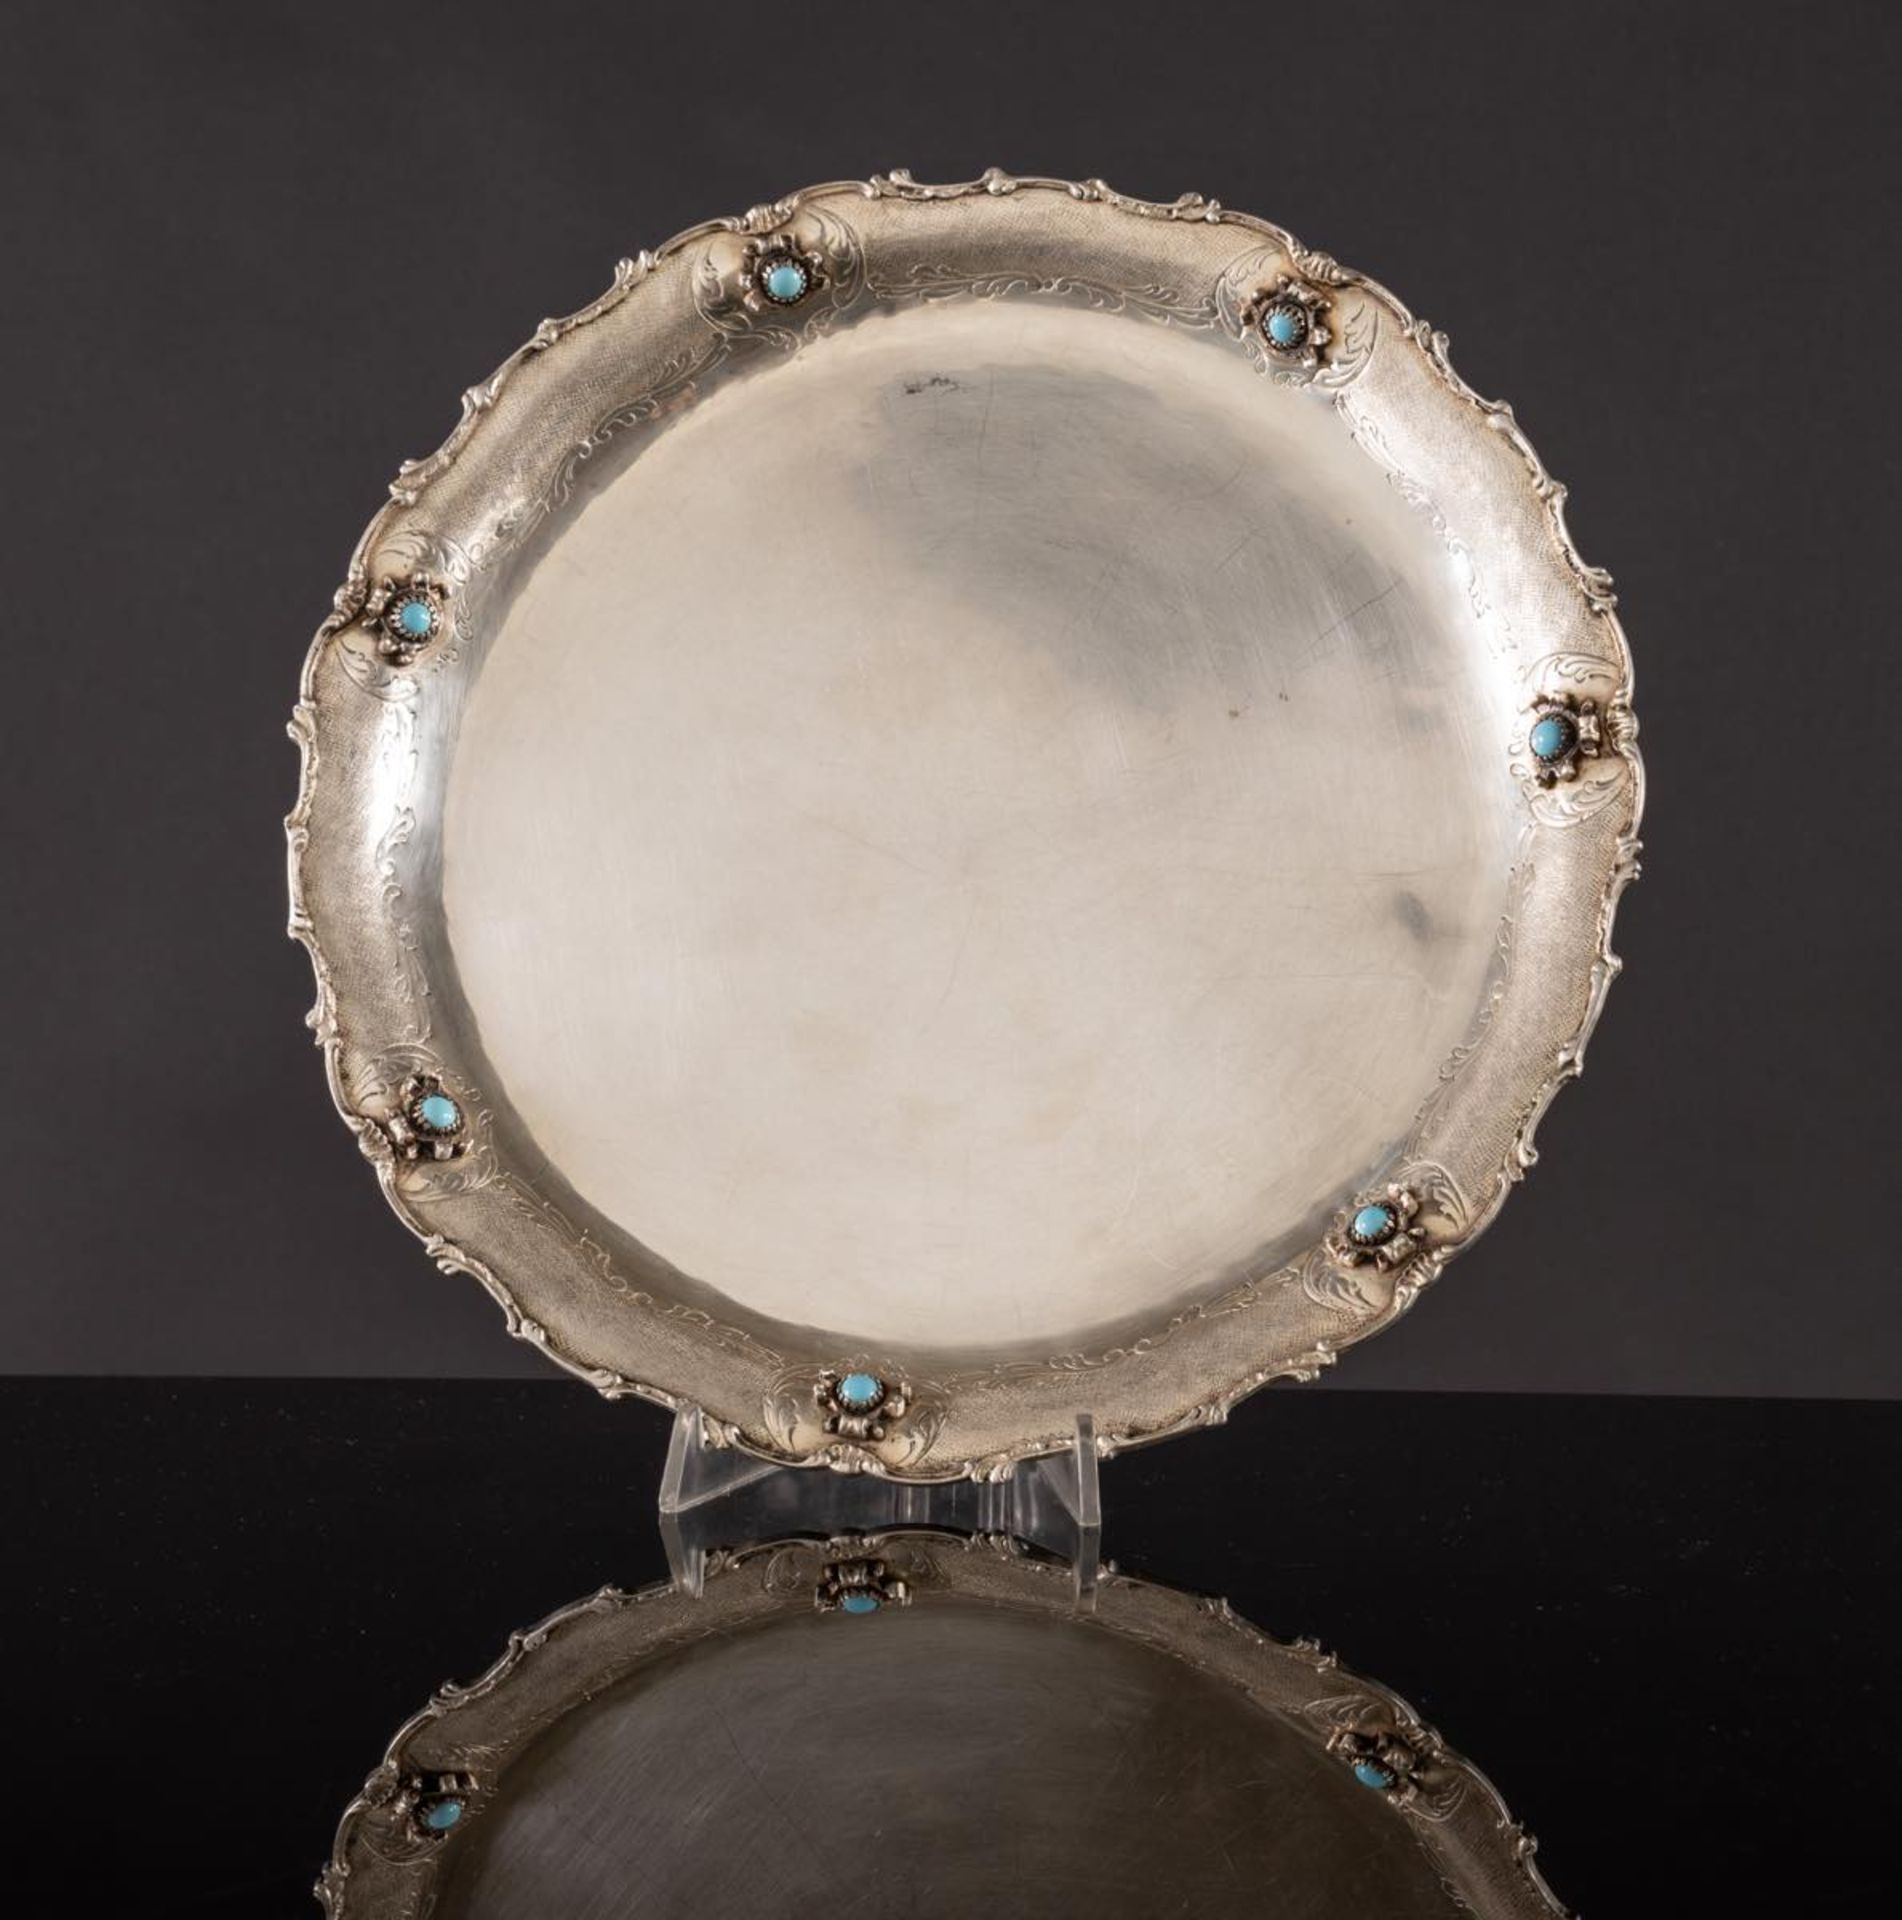 Vassoio circolare in argento, Milano, XX secolo. Cavetto liscio, tesa lavorata e decorata con